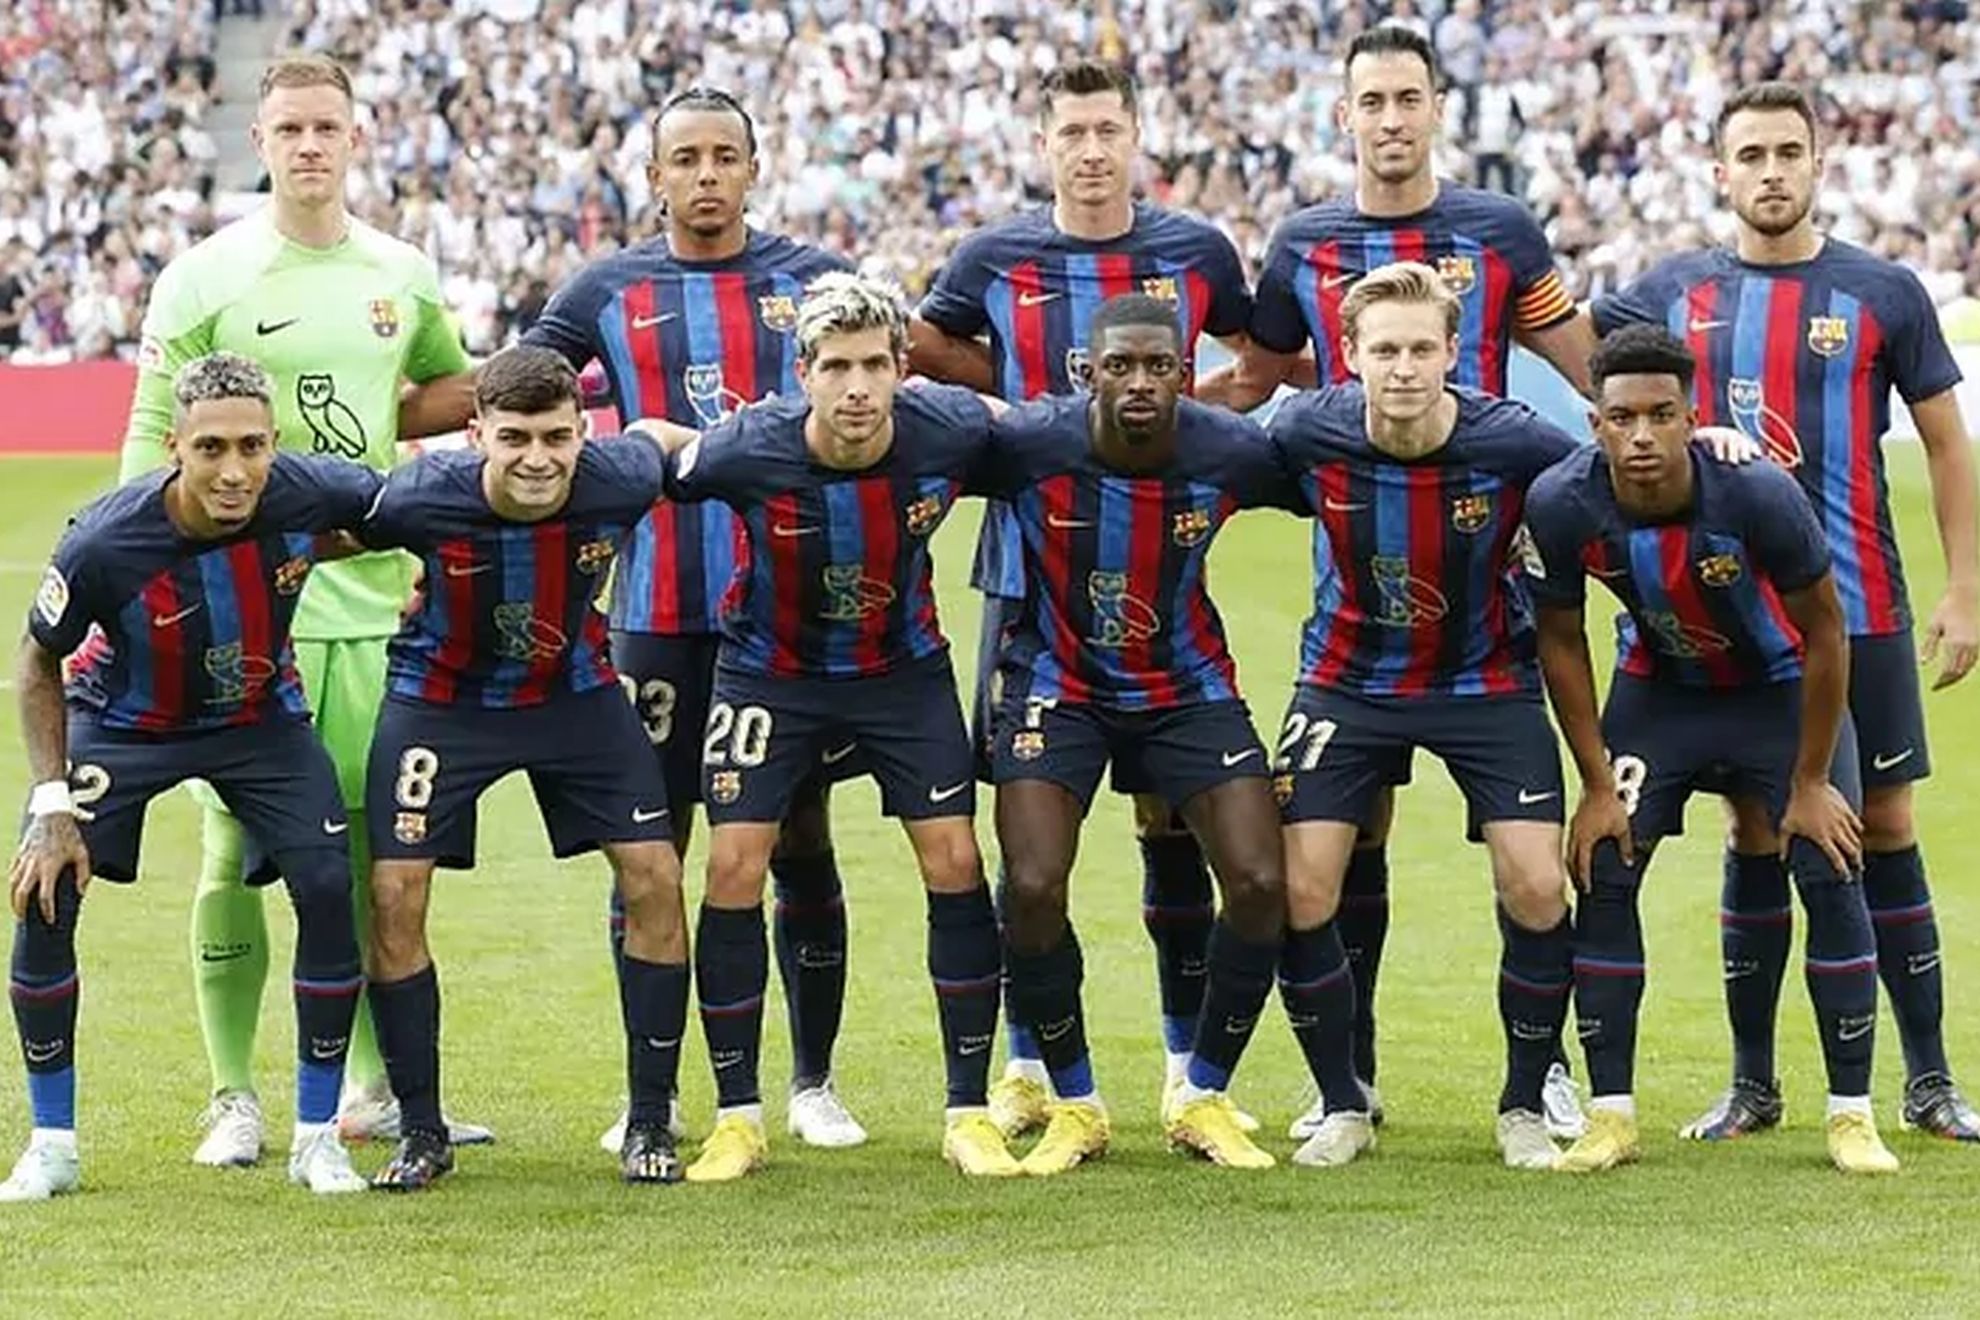 đội hình hiện tại của Barcelona theo uk88